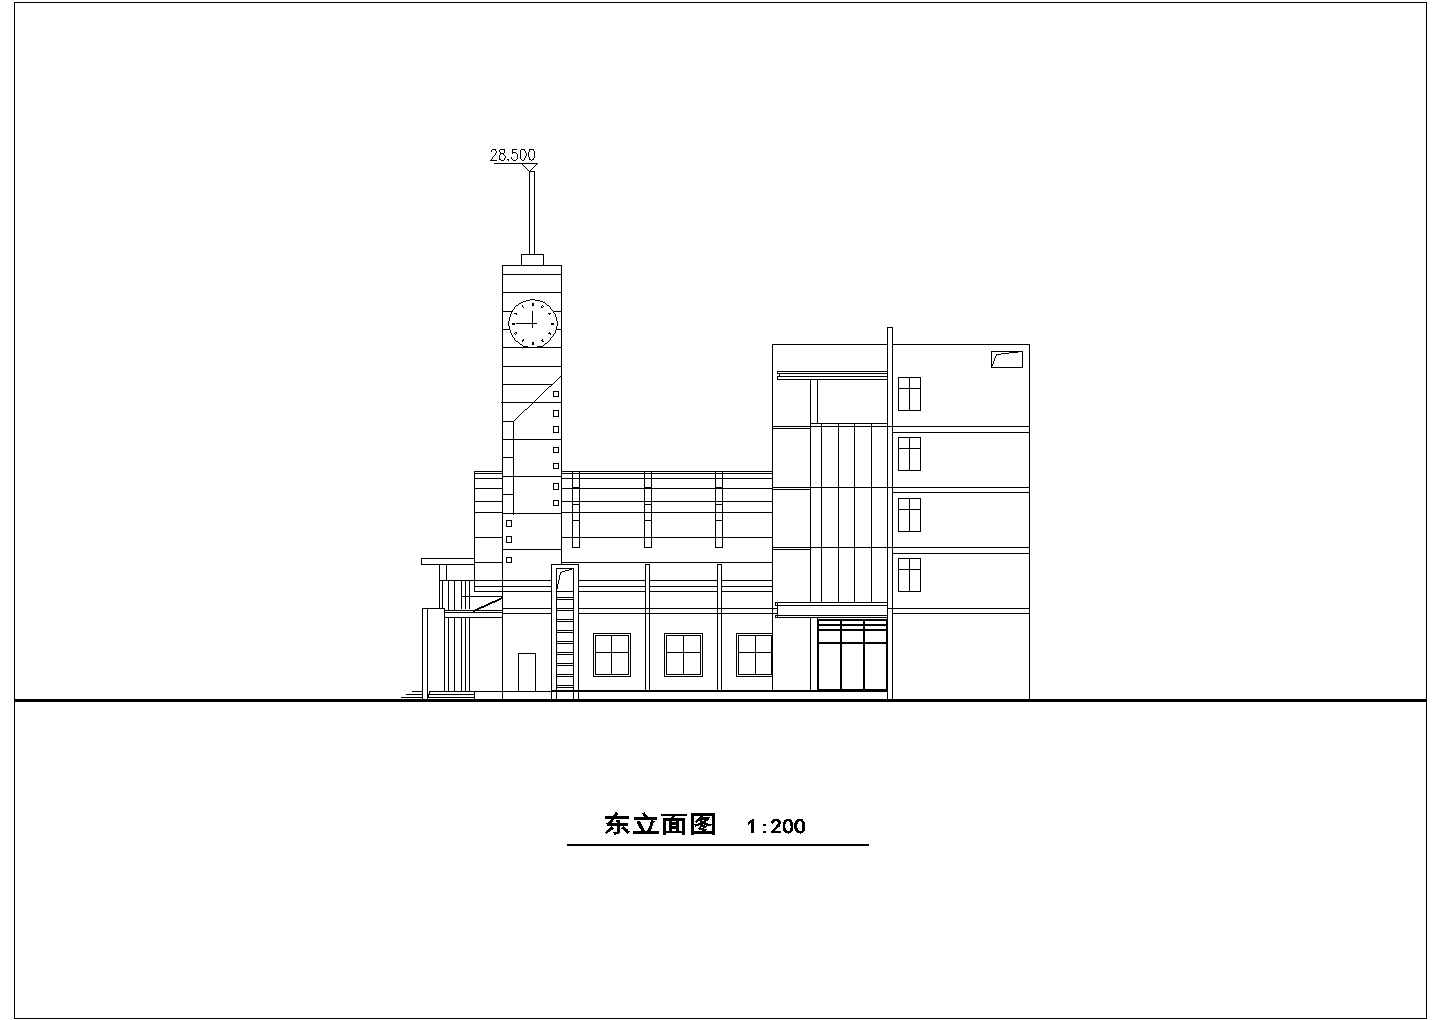 长87.62米 宽28.5米 4层3200平米二级汽车站建筑设计图【平立剖】